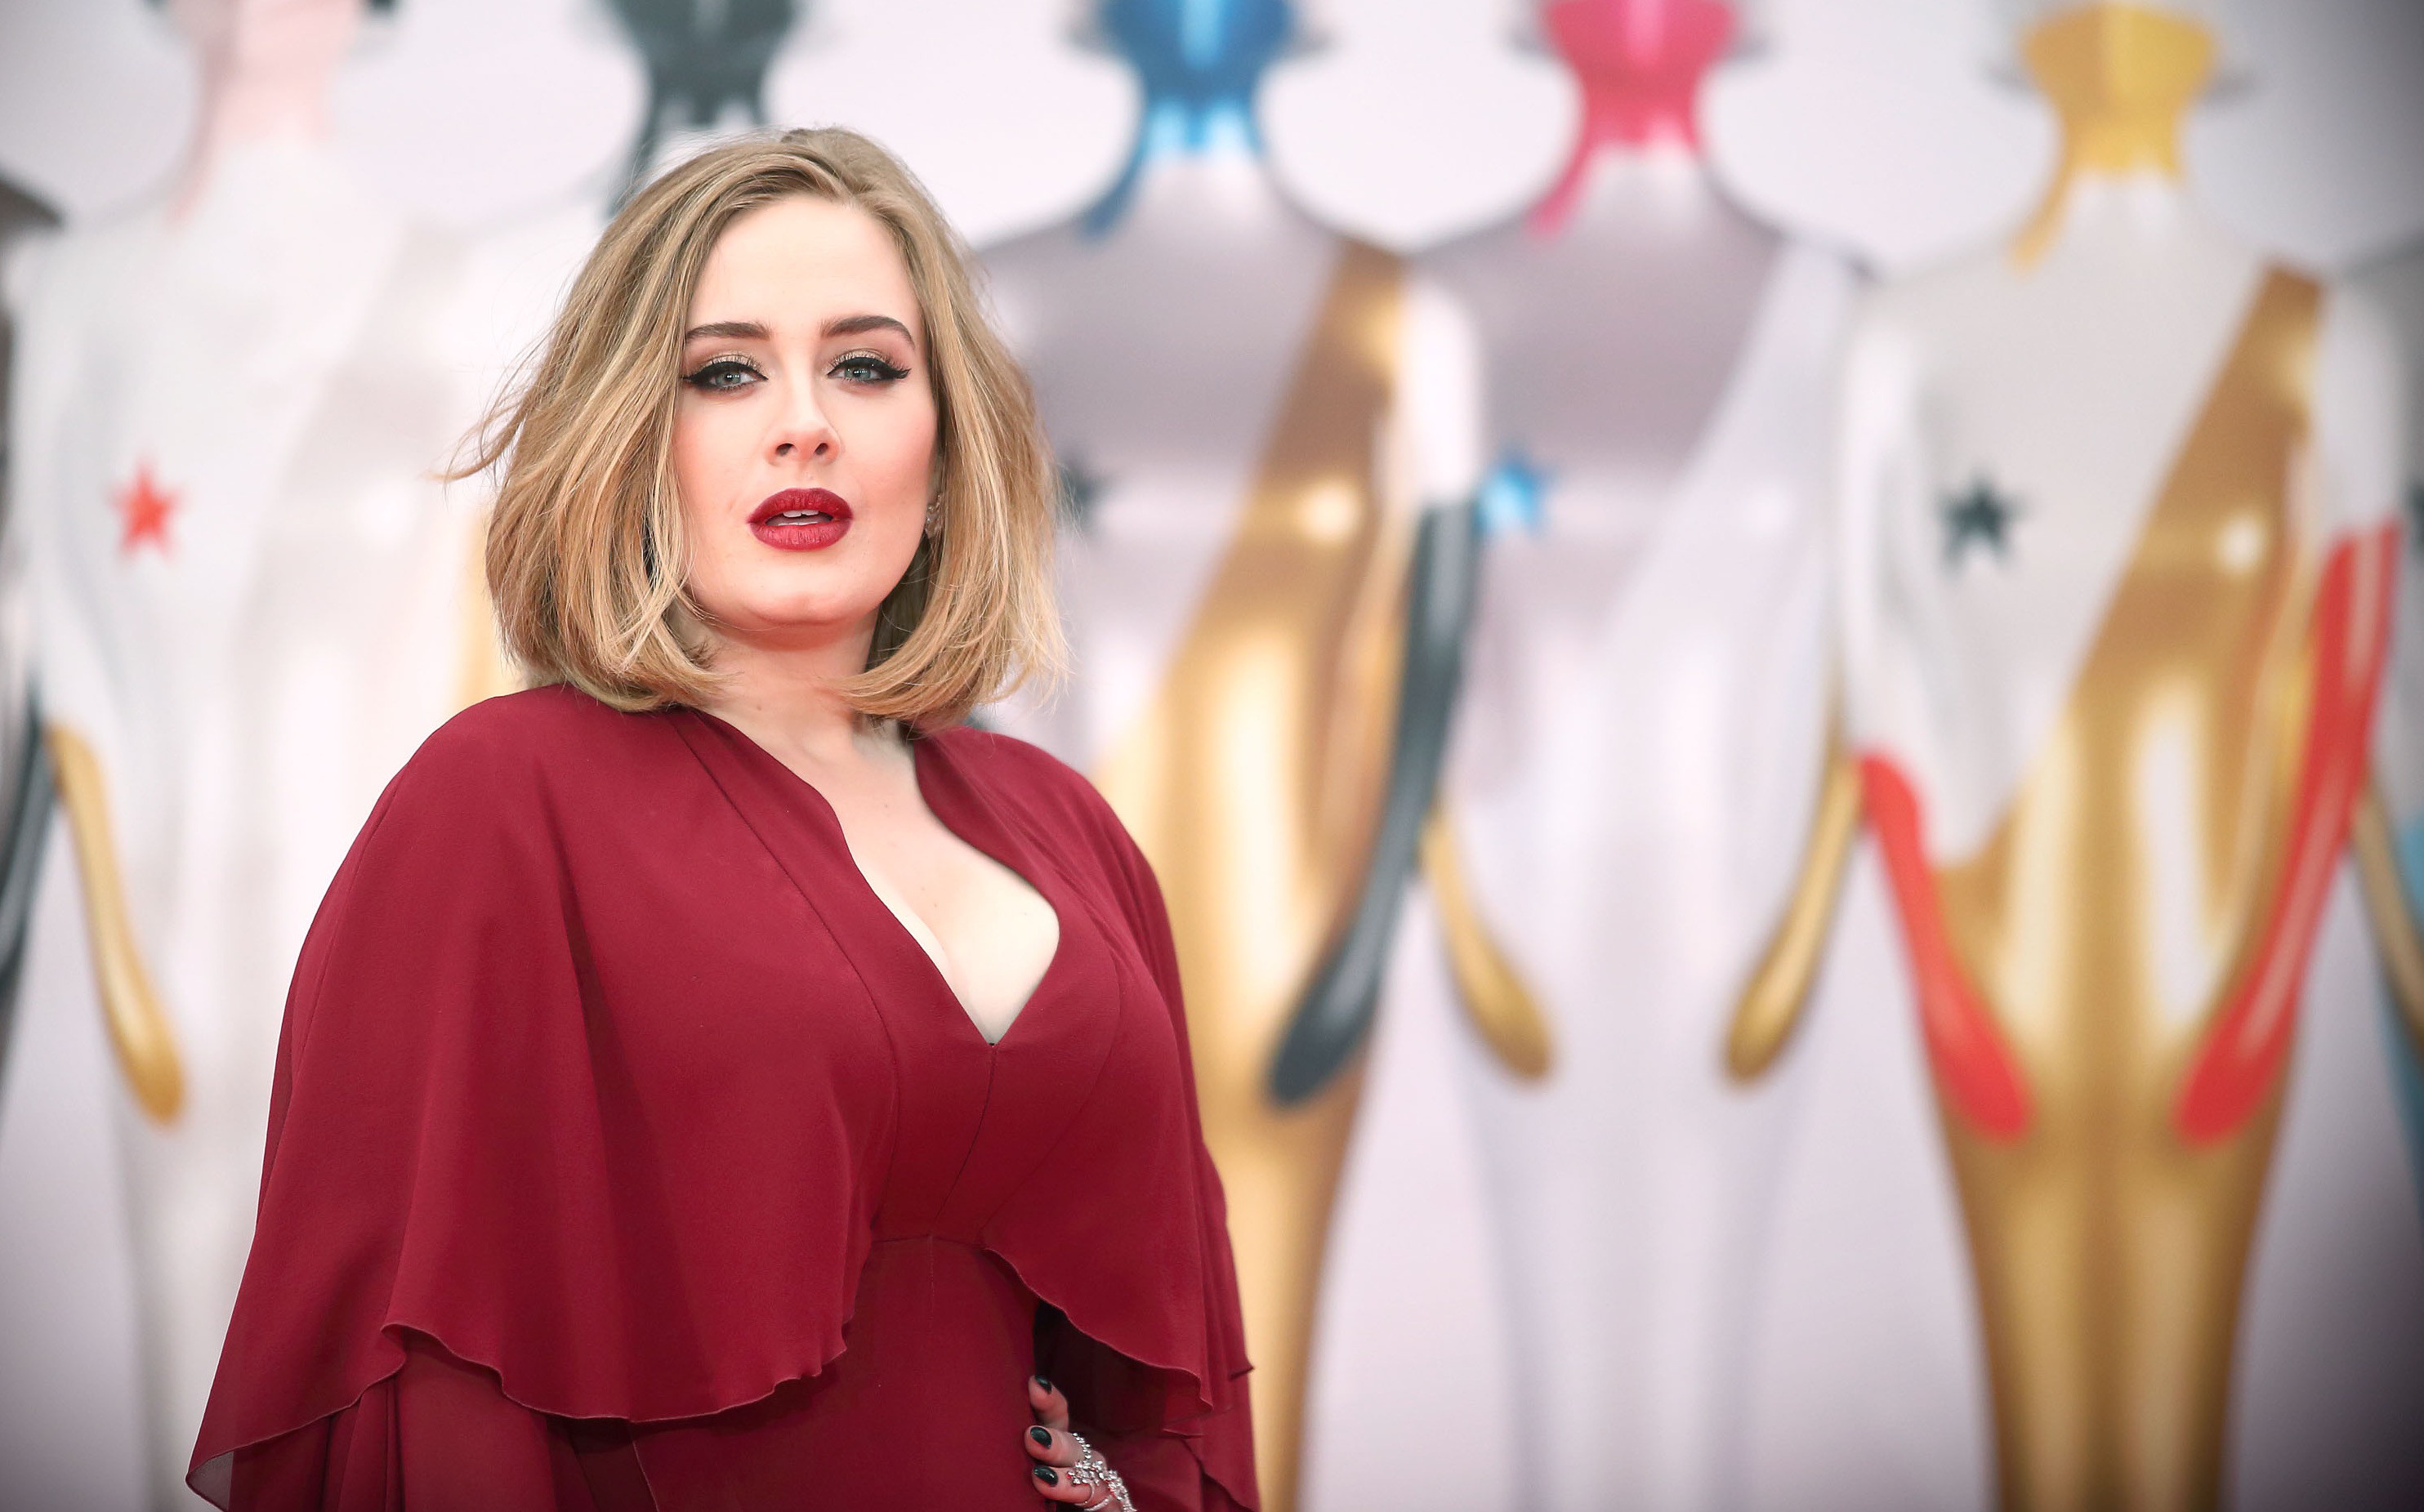 Imagenes De Adele En Hd - Adele En Los Grammy 2020 , HD Wallpaper & Backgrounds